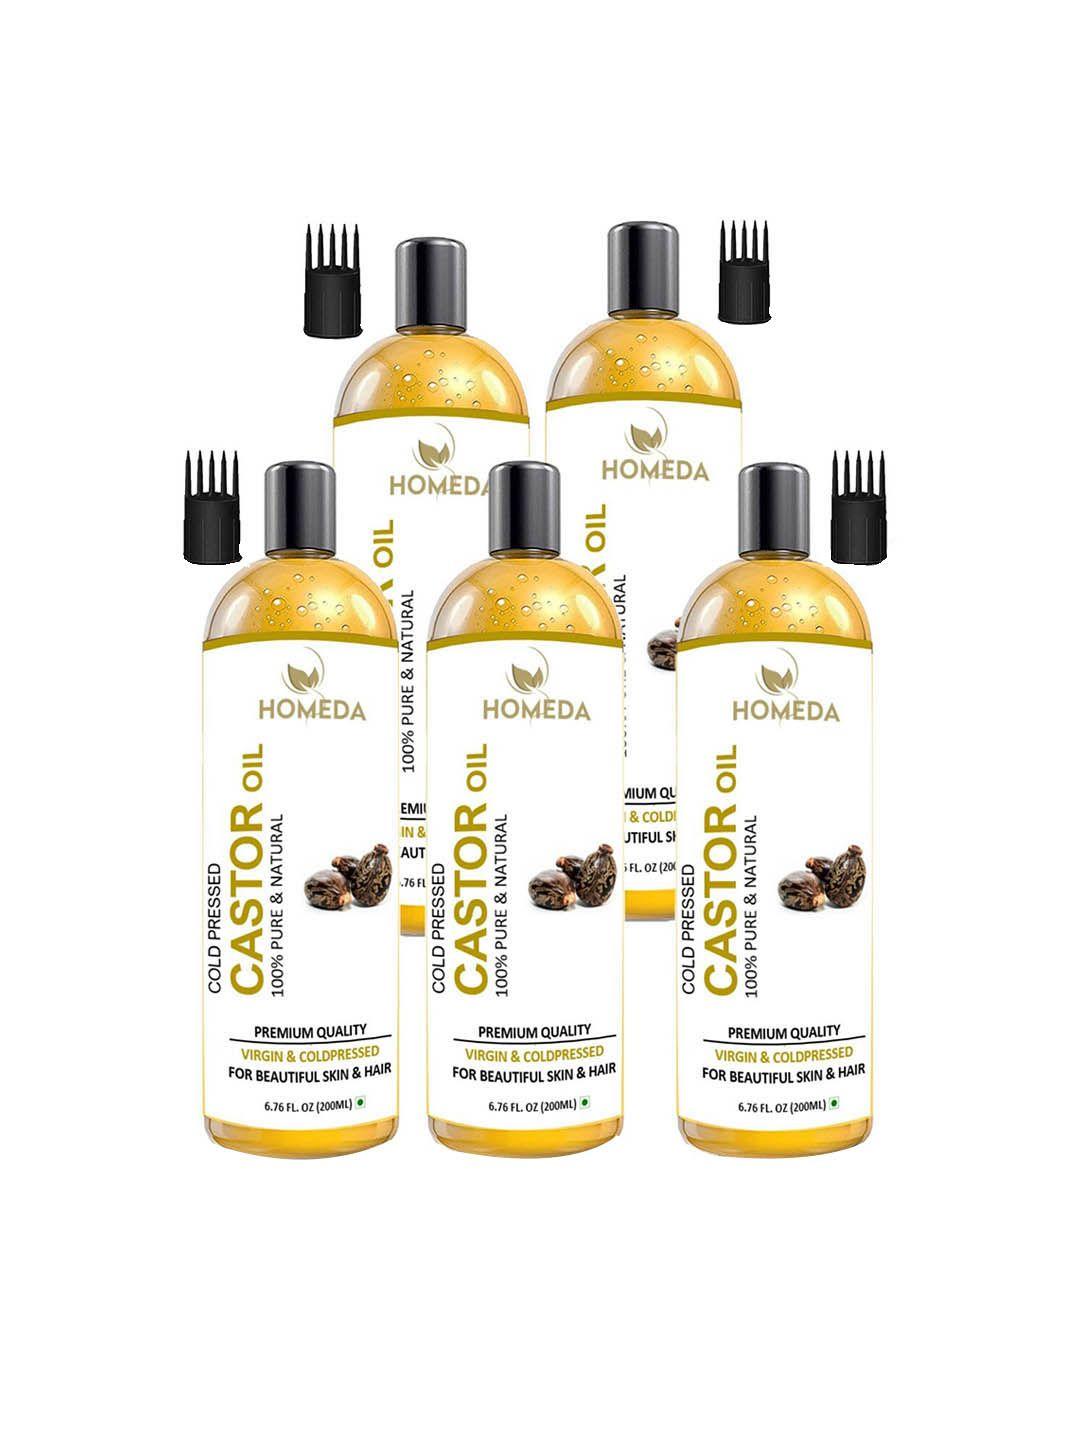 shudh online set of 5 cold pressed castor oil for hair, skin & eyebrow-200ml each